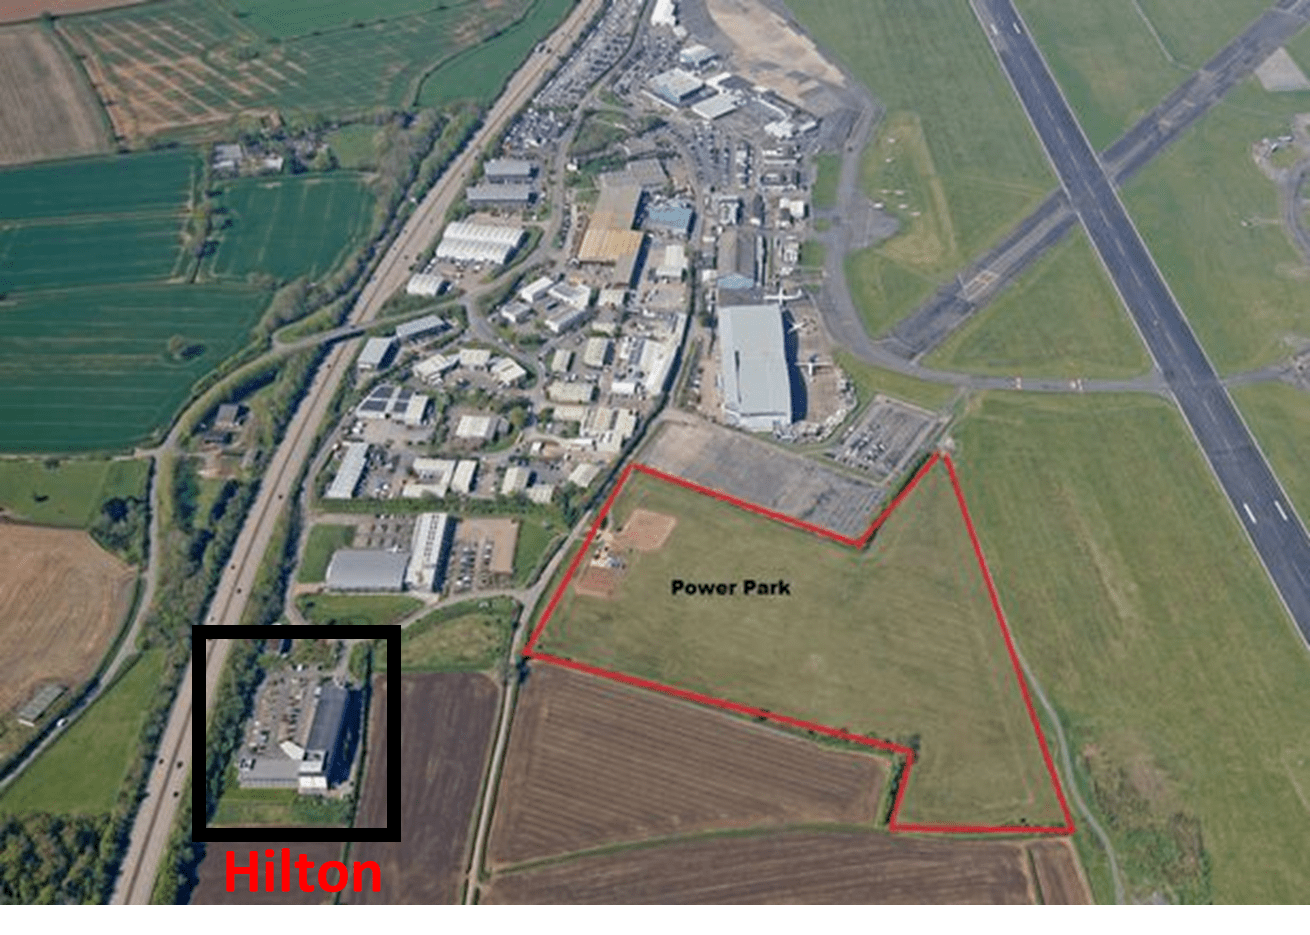 Exeter Logistics Park expansion area